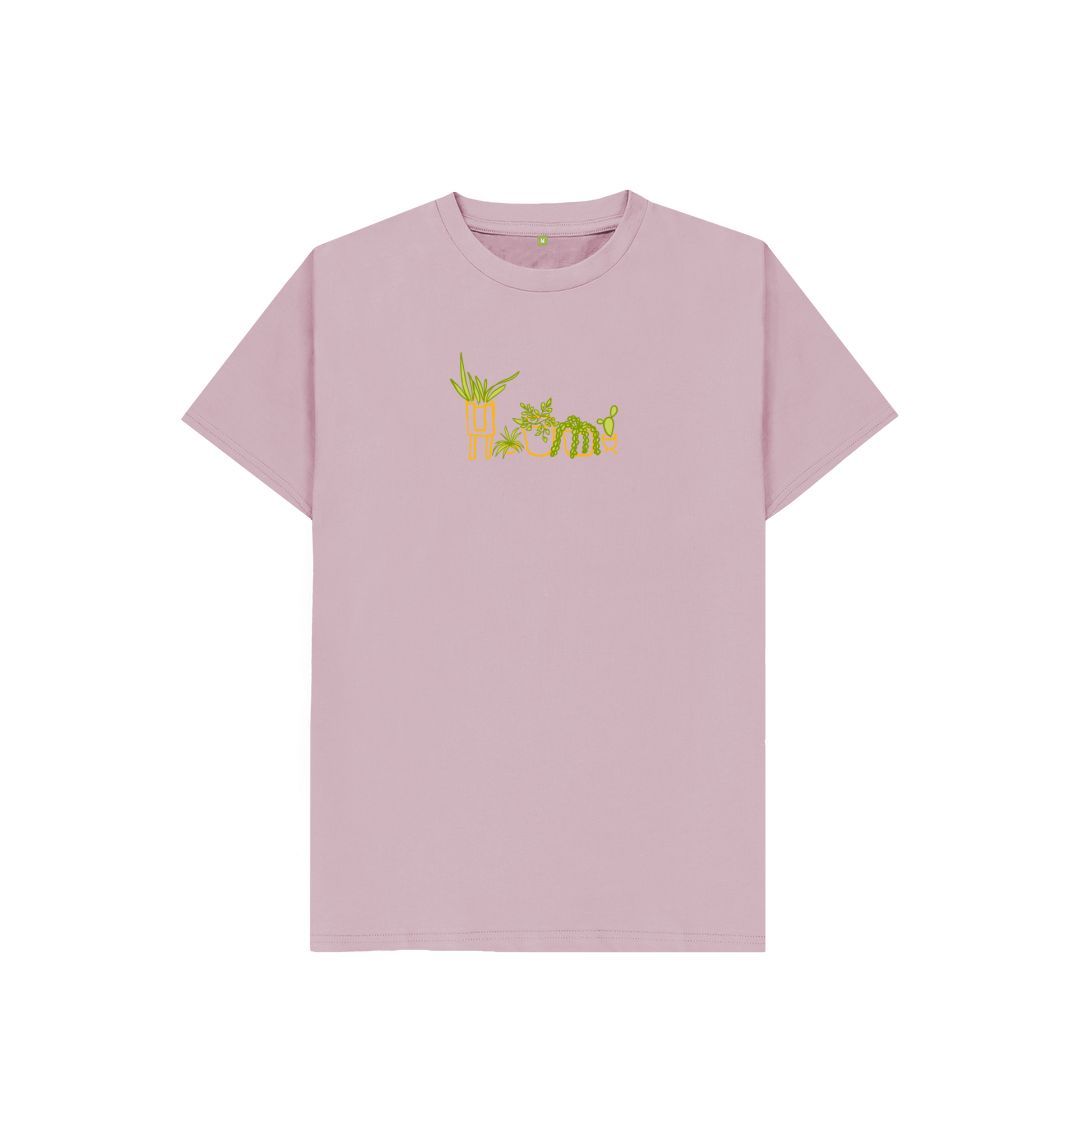 Mauve Plant Love T-Shirt (Kids - Assorted Colo